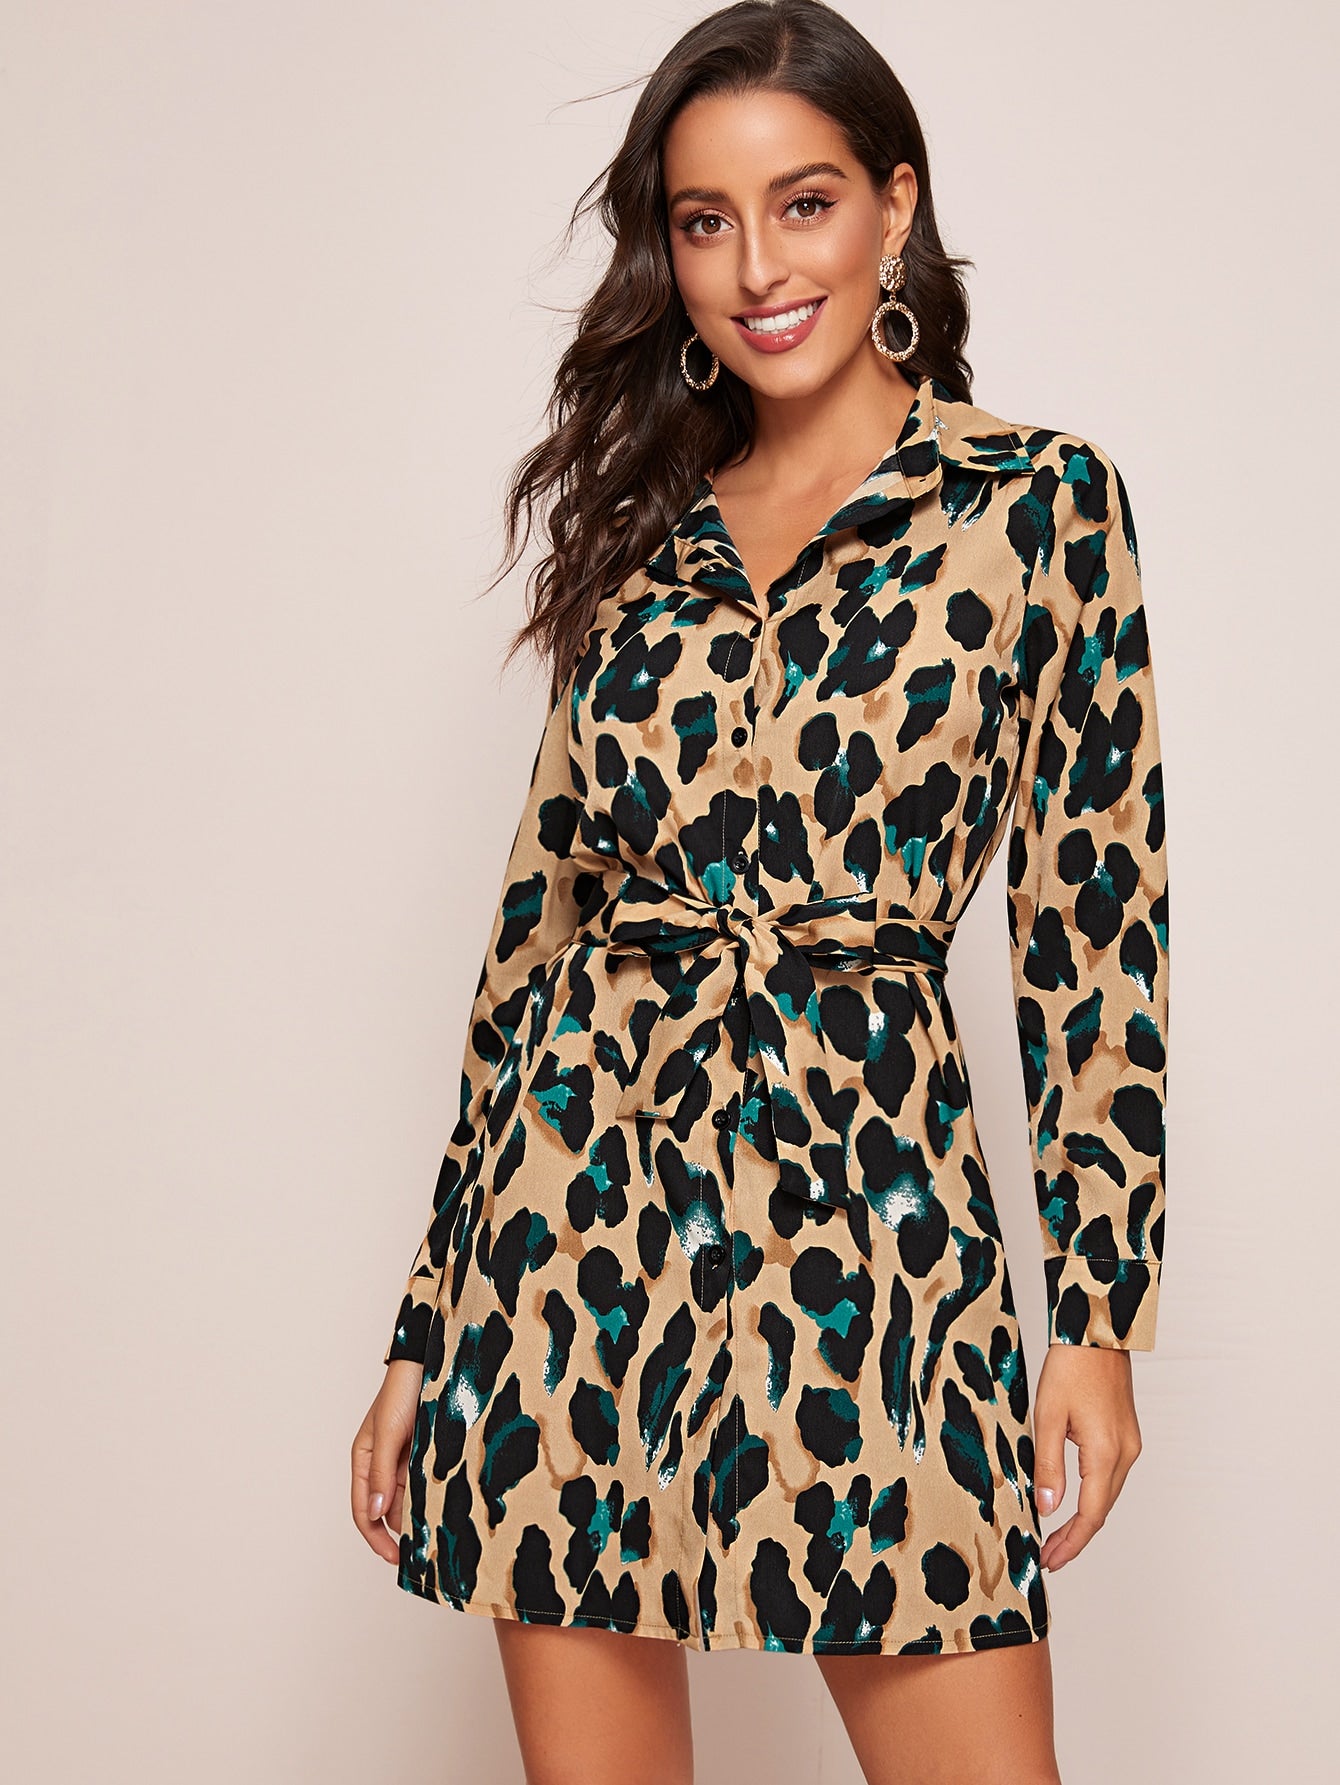 Leopard Print Self Tie Shirt Dress